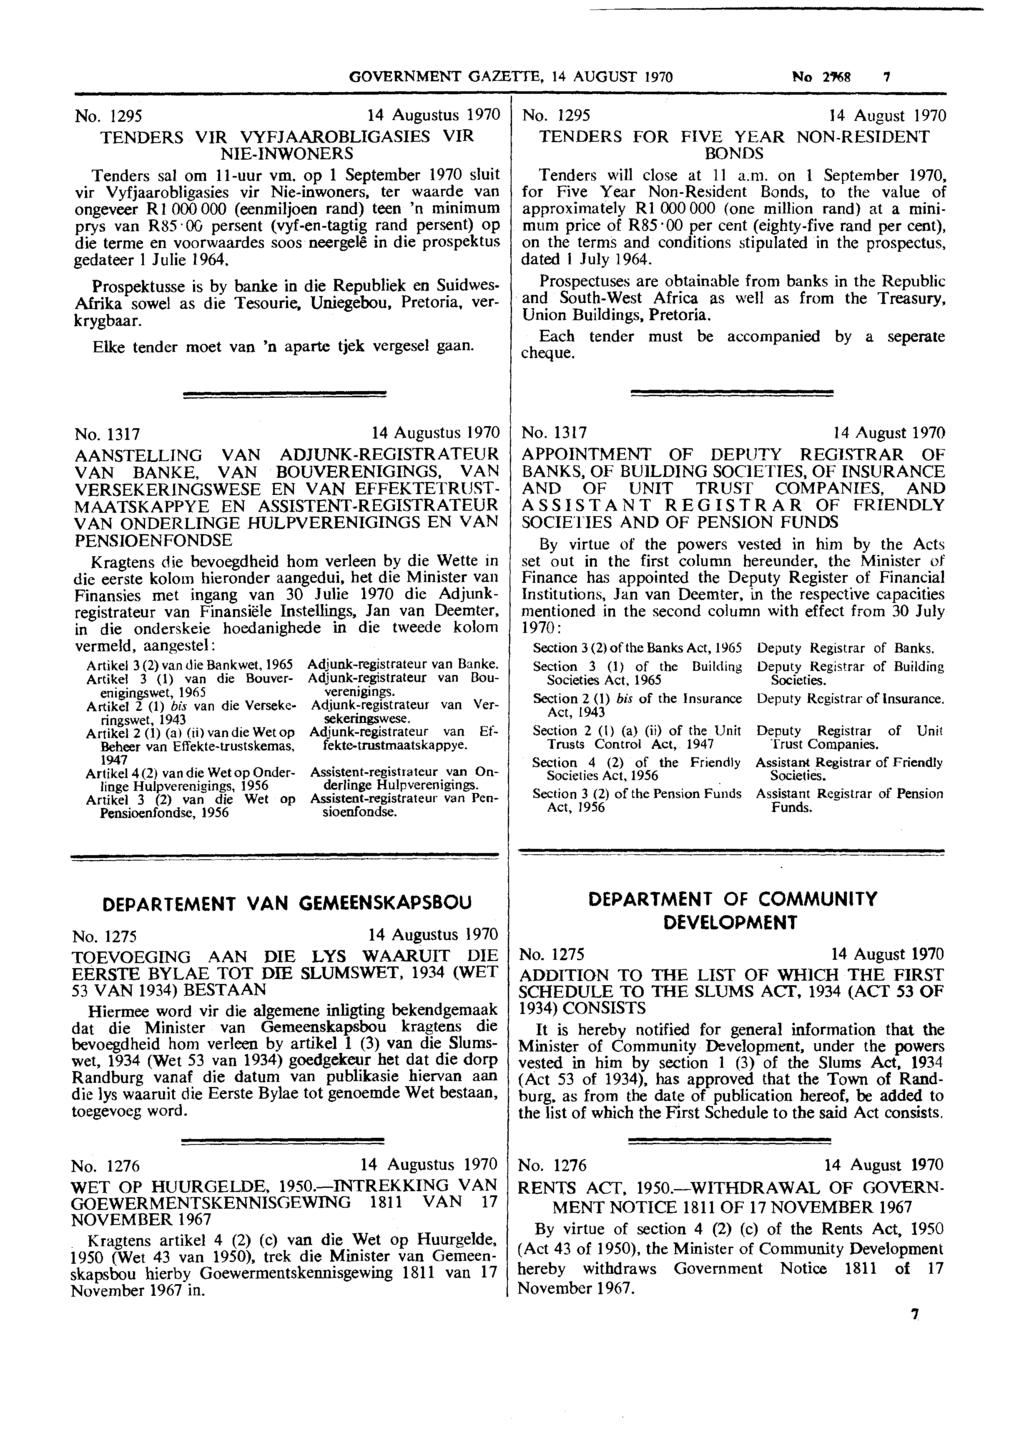 GOVERNMENT GAIBTTE, 14 AUGUST 1970 No 2x8 7 No. 1295 14 Augustus 1970 TENDERS VIR WFJAAROBLIGASIES VIR NIE-INWONERS Tenders sal om 11-uur vm.